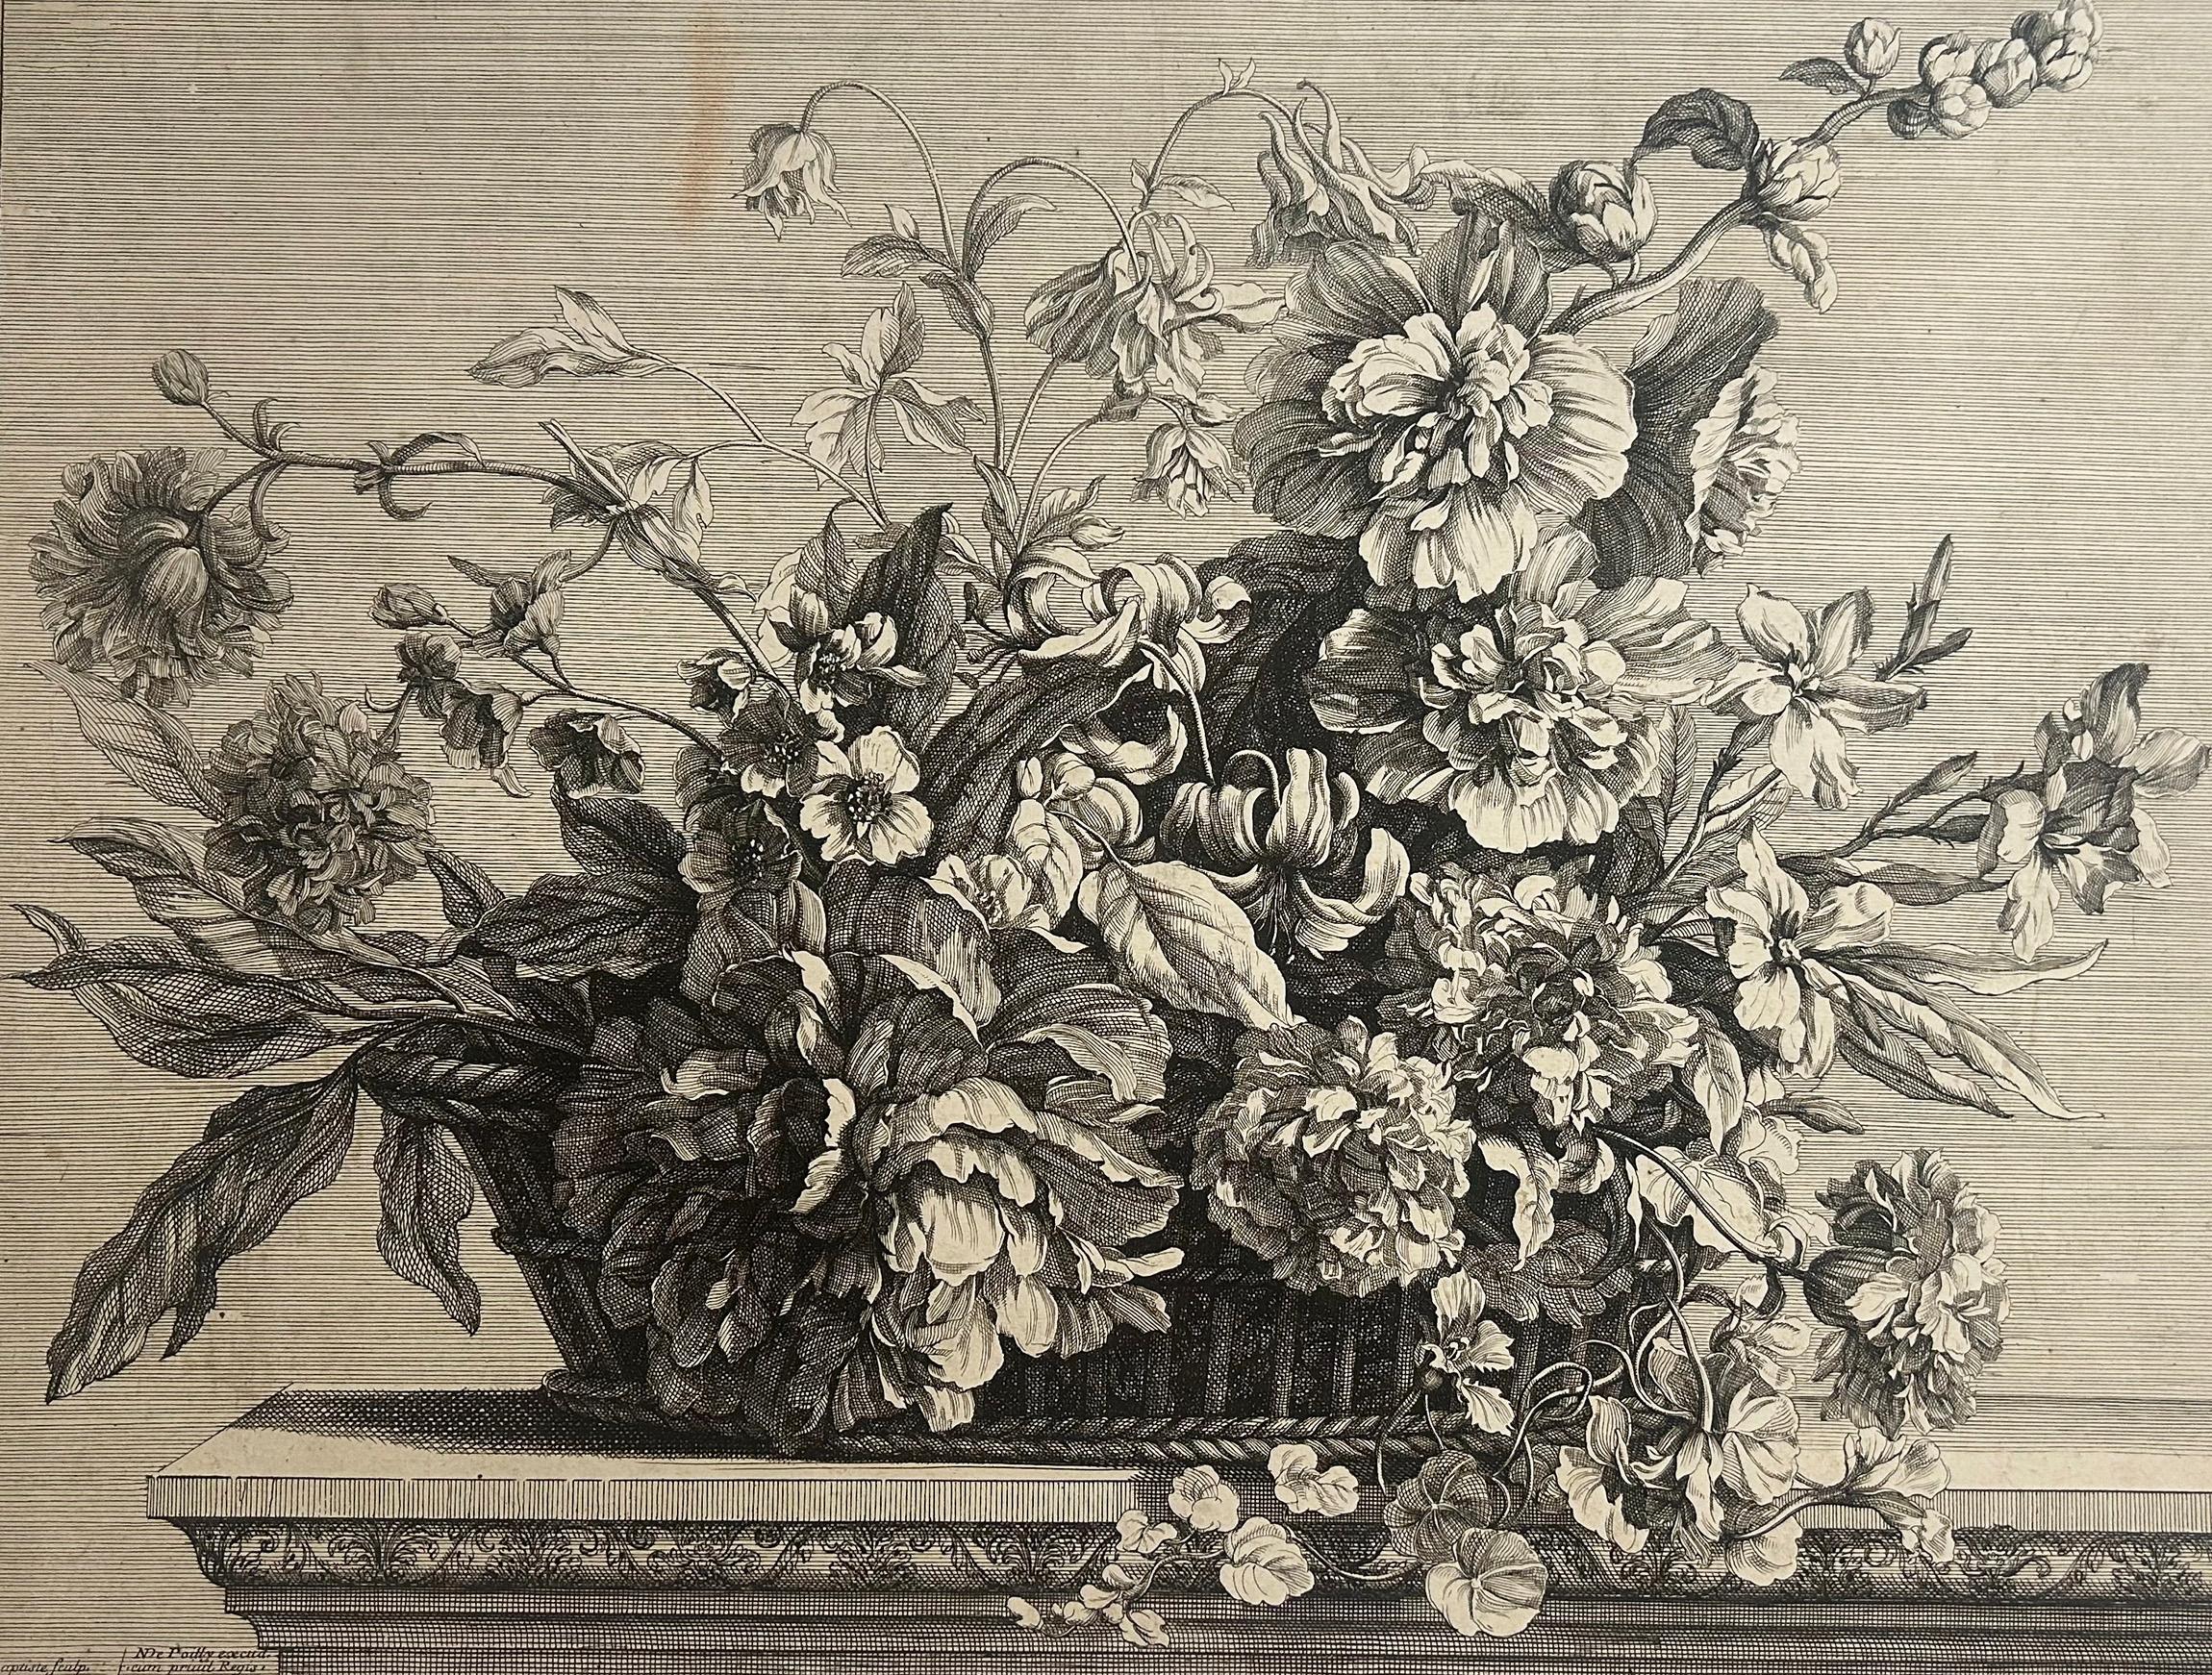 Grande corbeille de fleurs garnie de rose trémière, ancolie, pivoine, lis. - Print by Jean-Baptiste Monnoyer